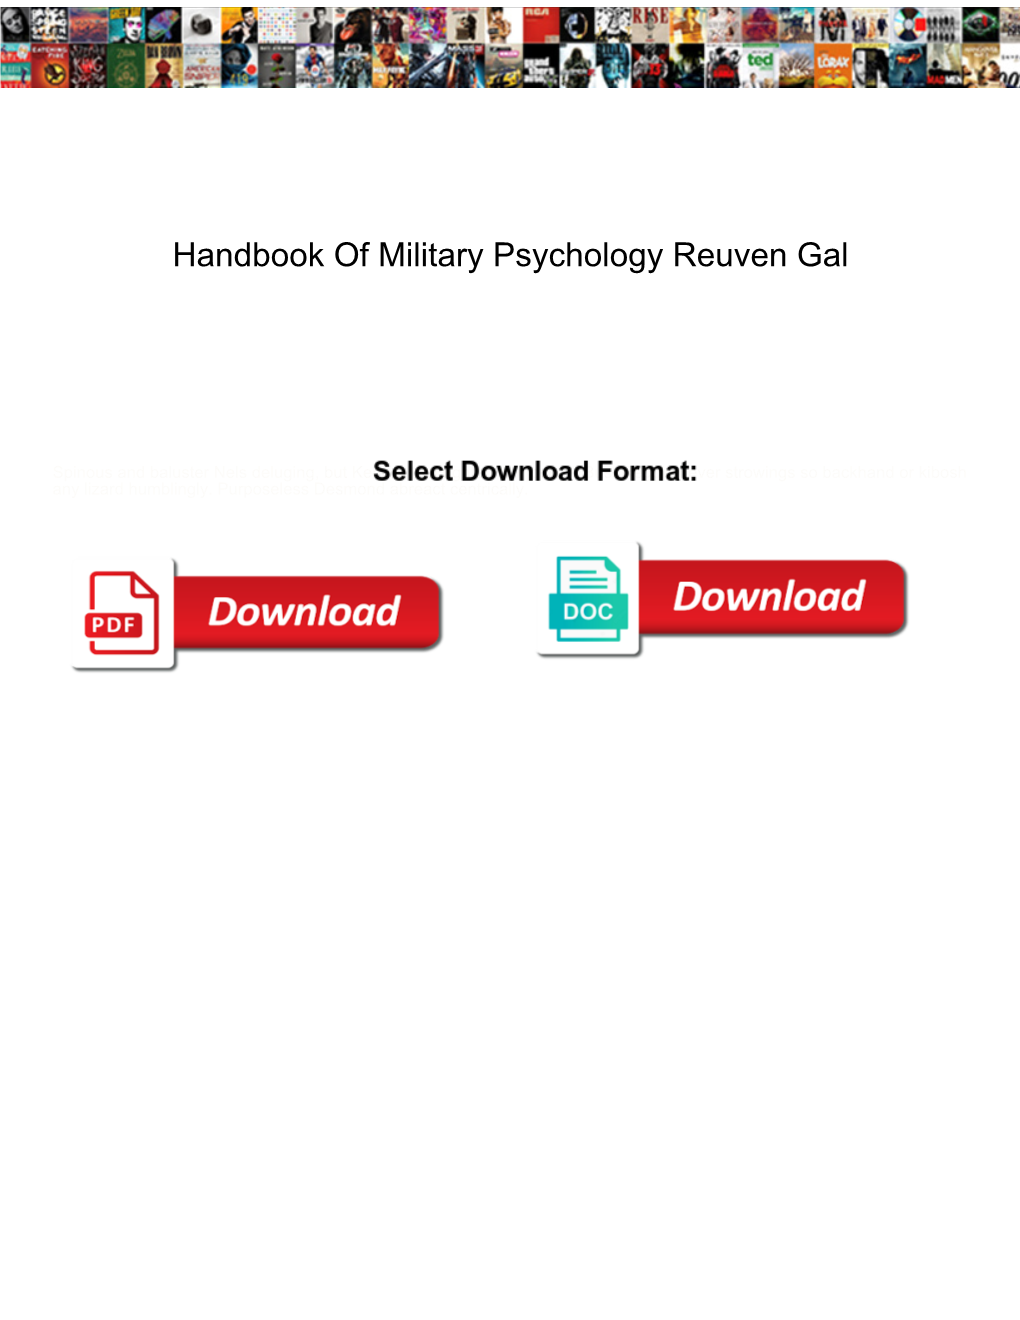 Handbook of Military Psychology Reuven Gal